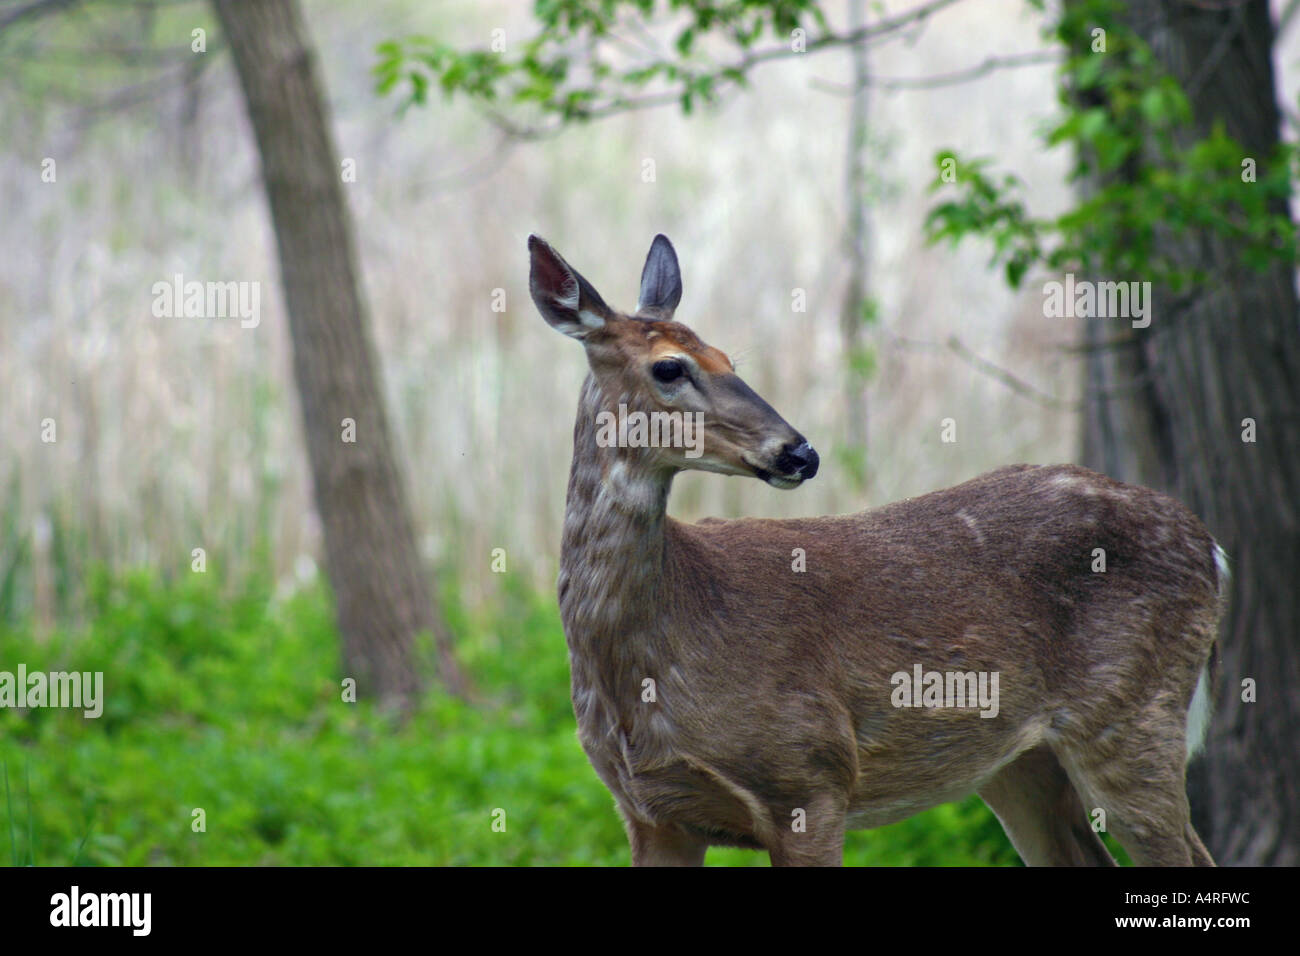 Deer in natural habitat Stock Photo